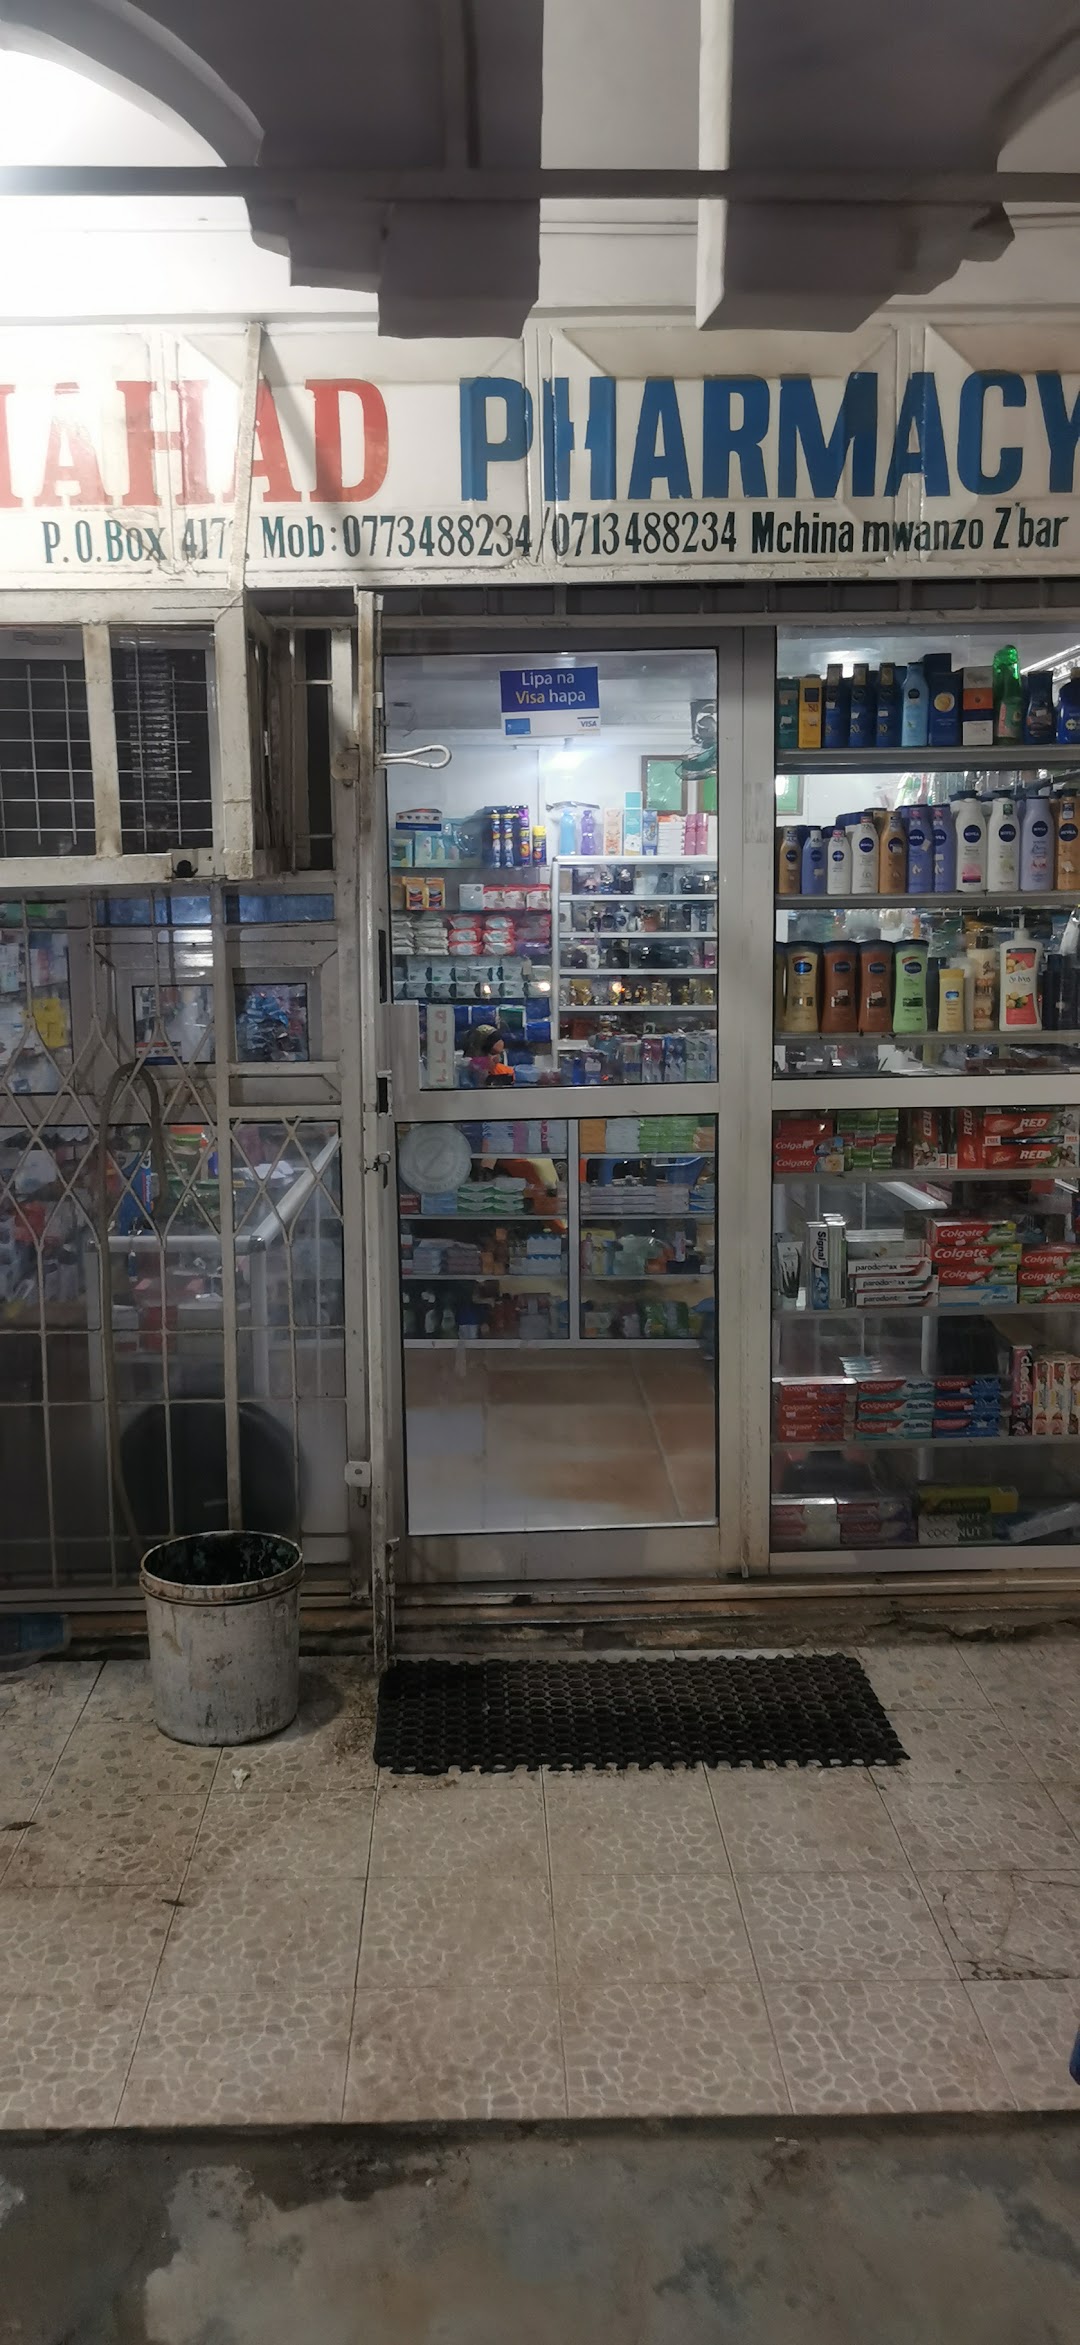 Mahad Pharmacy